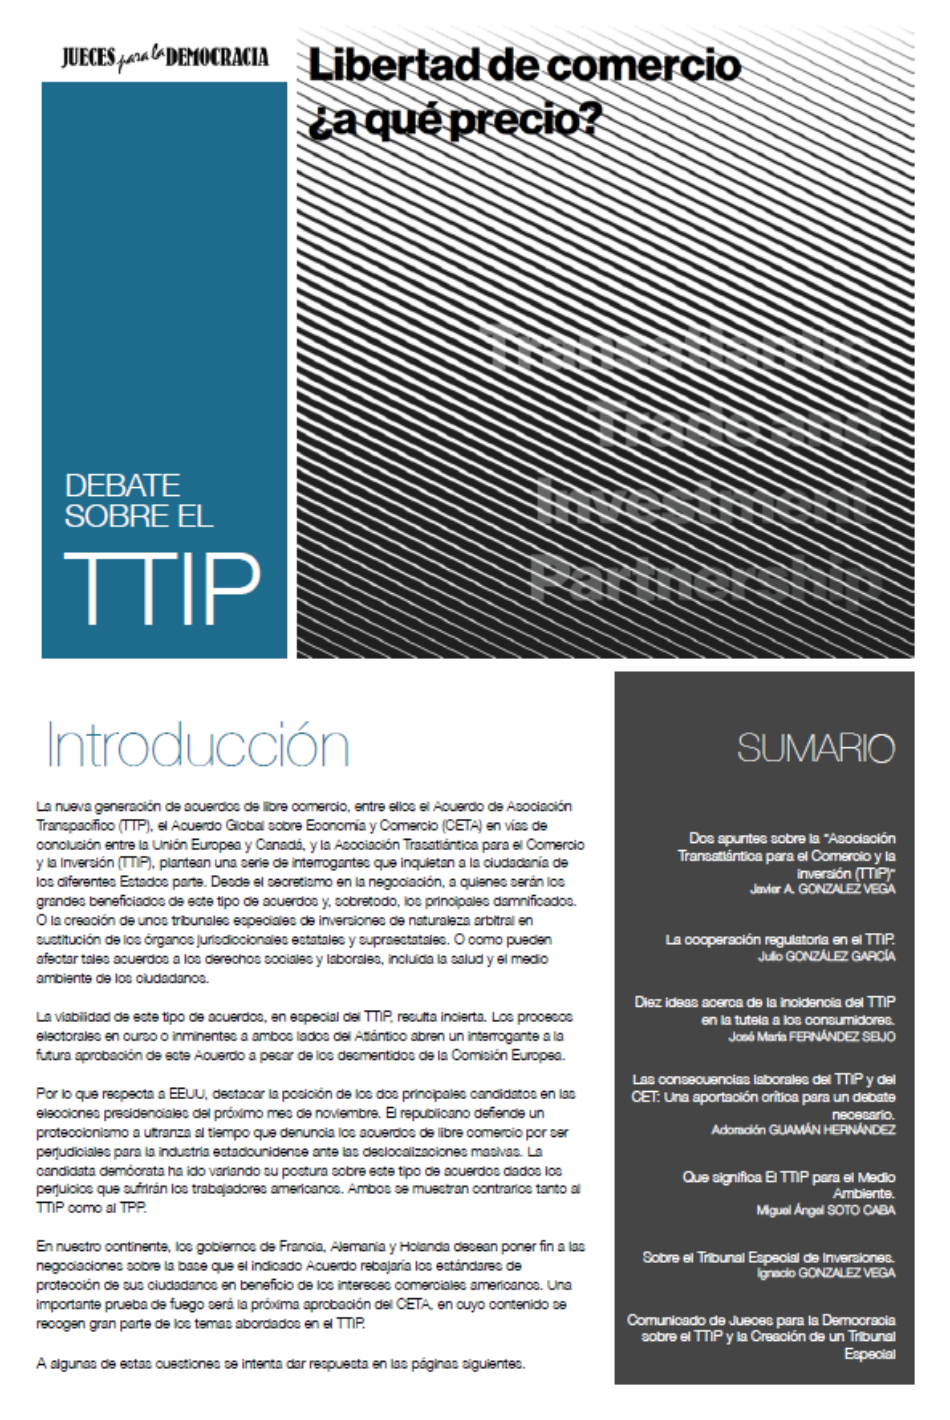 Publicación JpD: Debate sobre el TTIP. Libertad de comercio ¿a qué precio?